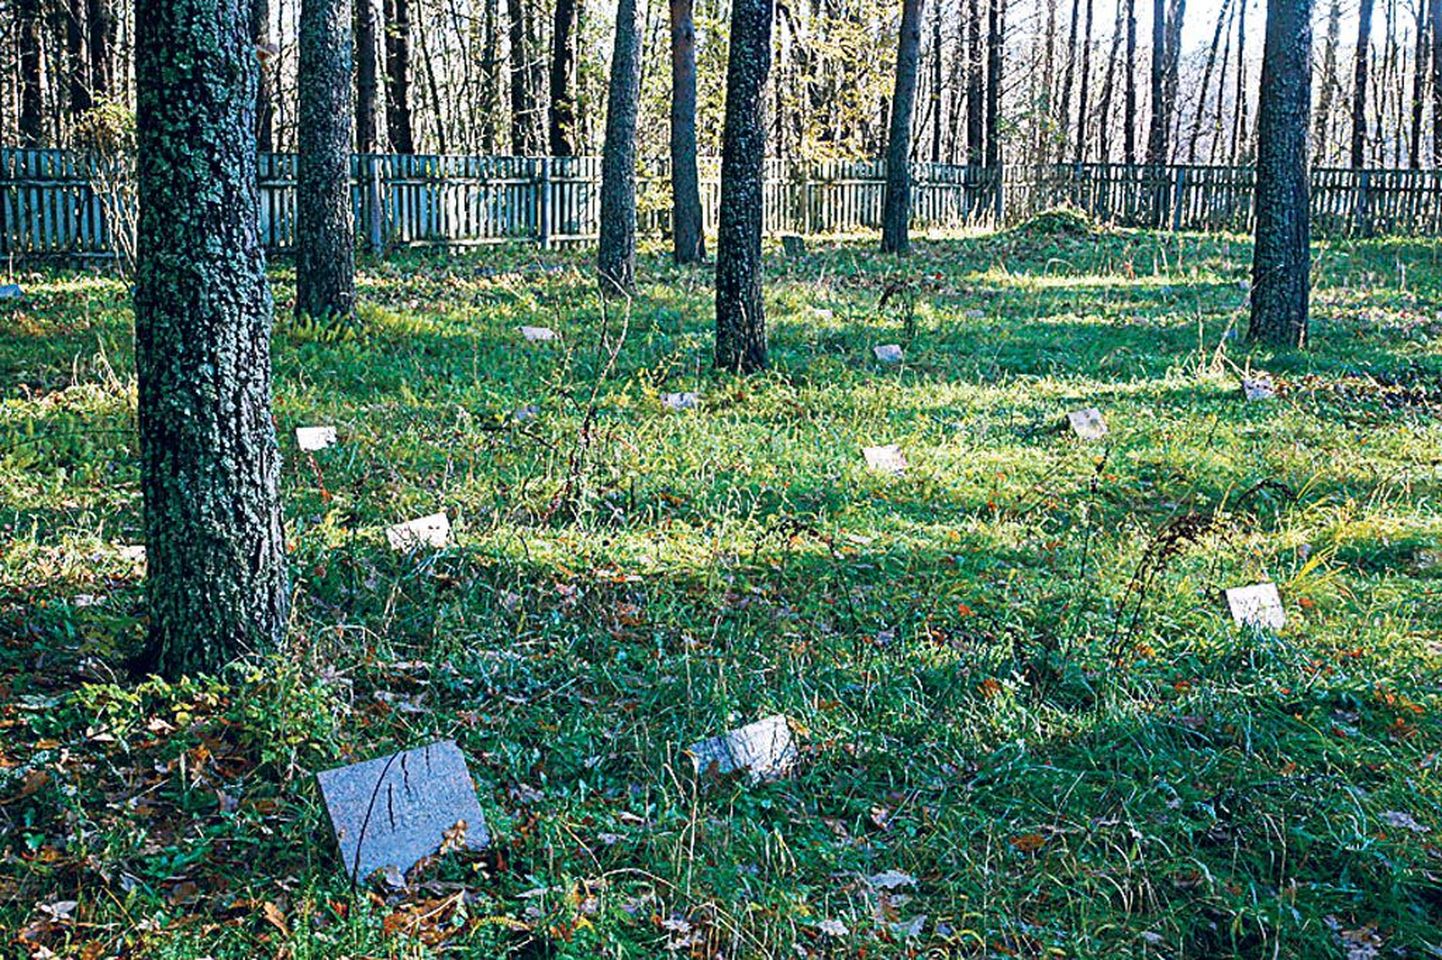 Tammiste hooldekodu kalmistu on Pärnu jõe kaldal, selleni viib sissesõidetud metsatee.